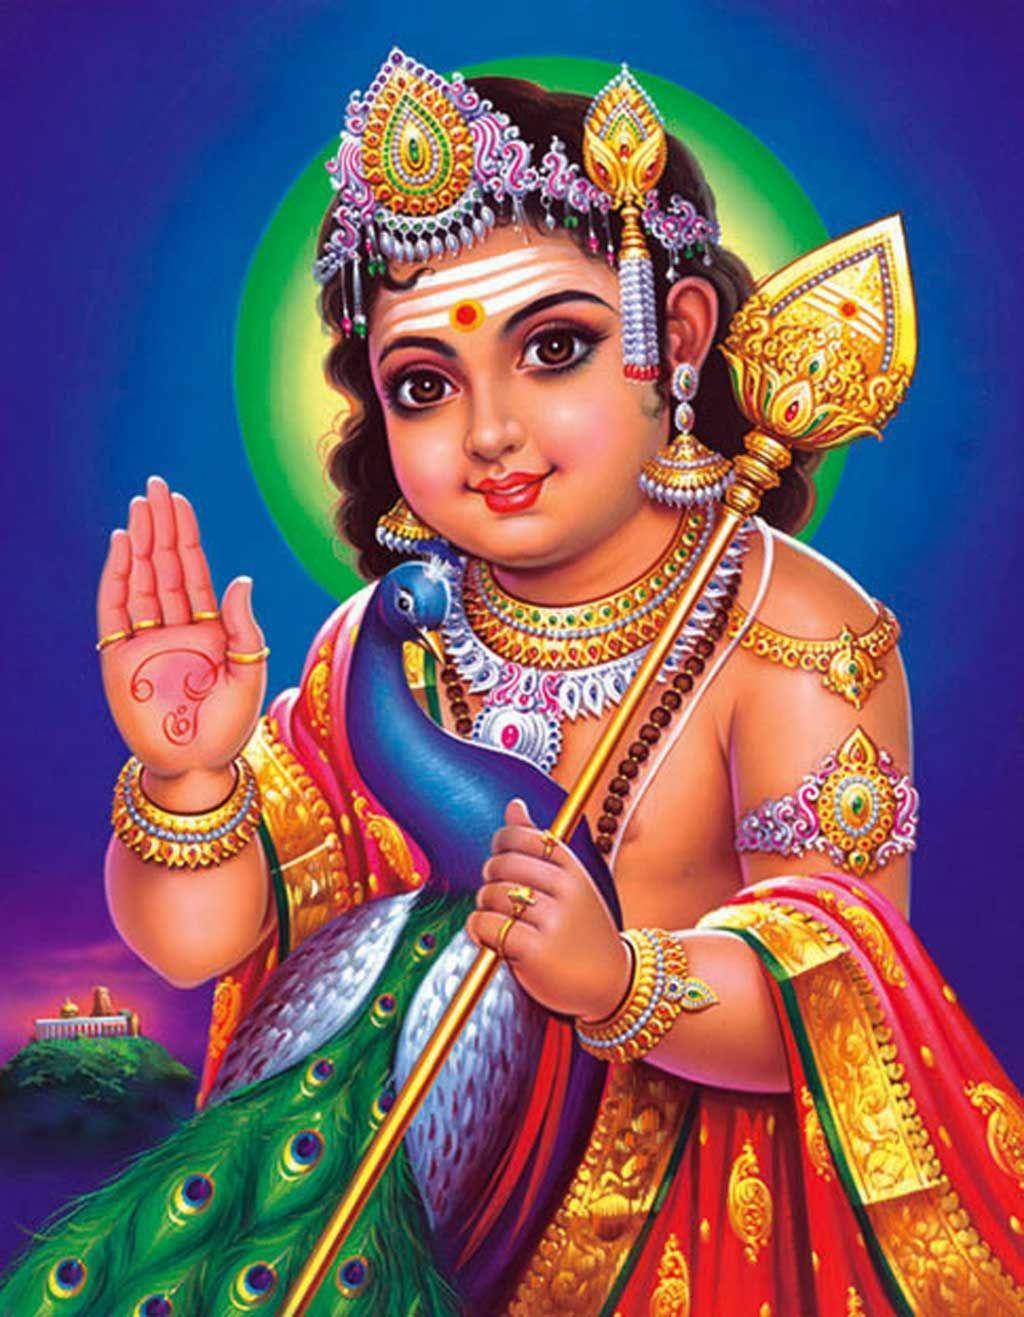 Hindu god murugan hd wallpaper | Lord murugan images free download for tab  Page No - 12 - Wallsnapy